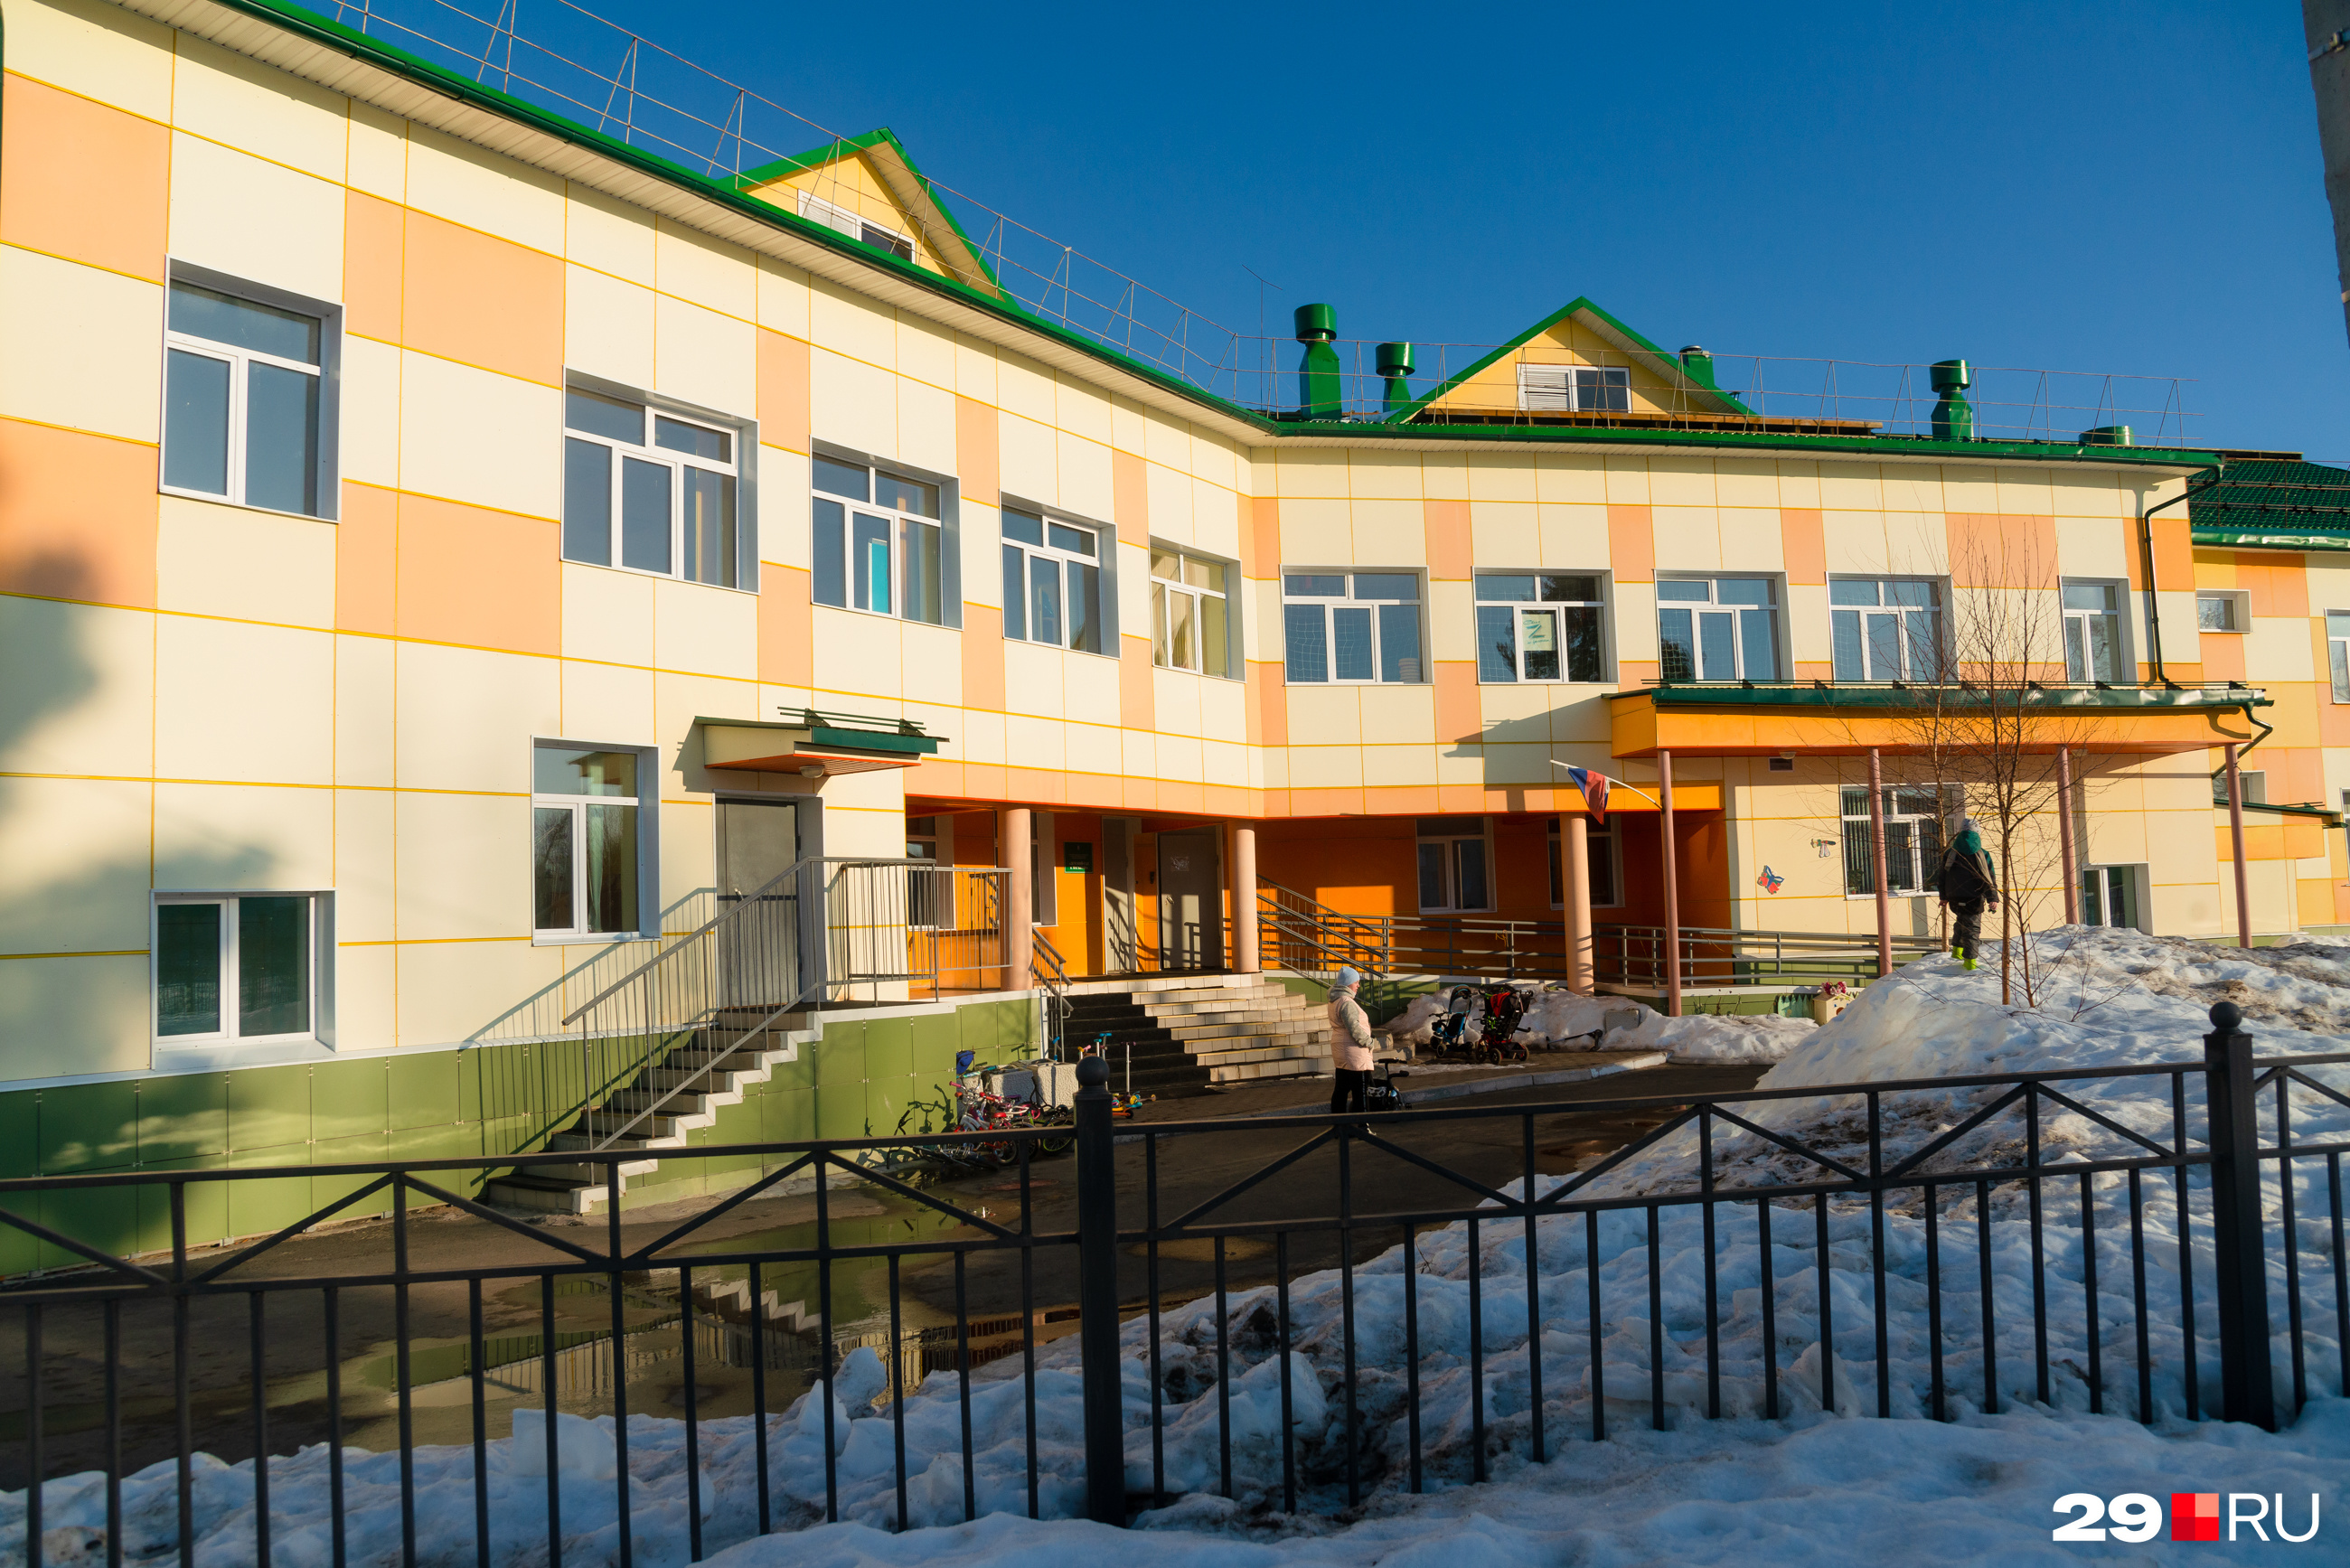 Детский сад на 120 мест открылся в Васьково в 2015 году — после затянувшегося на 2,5 года строительства